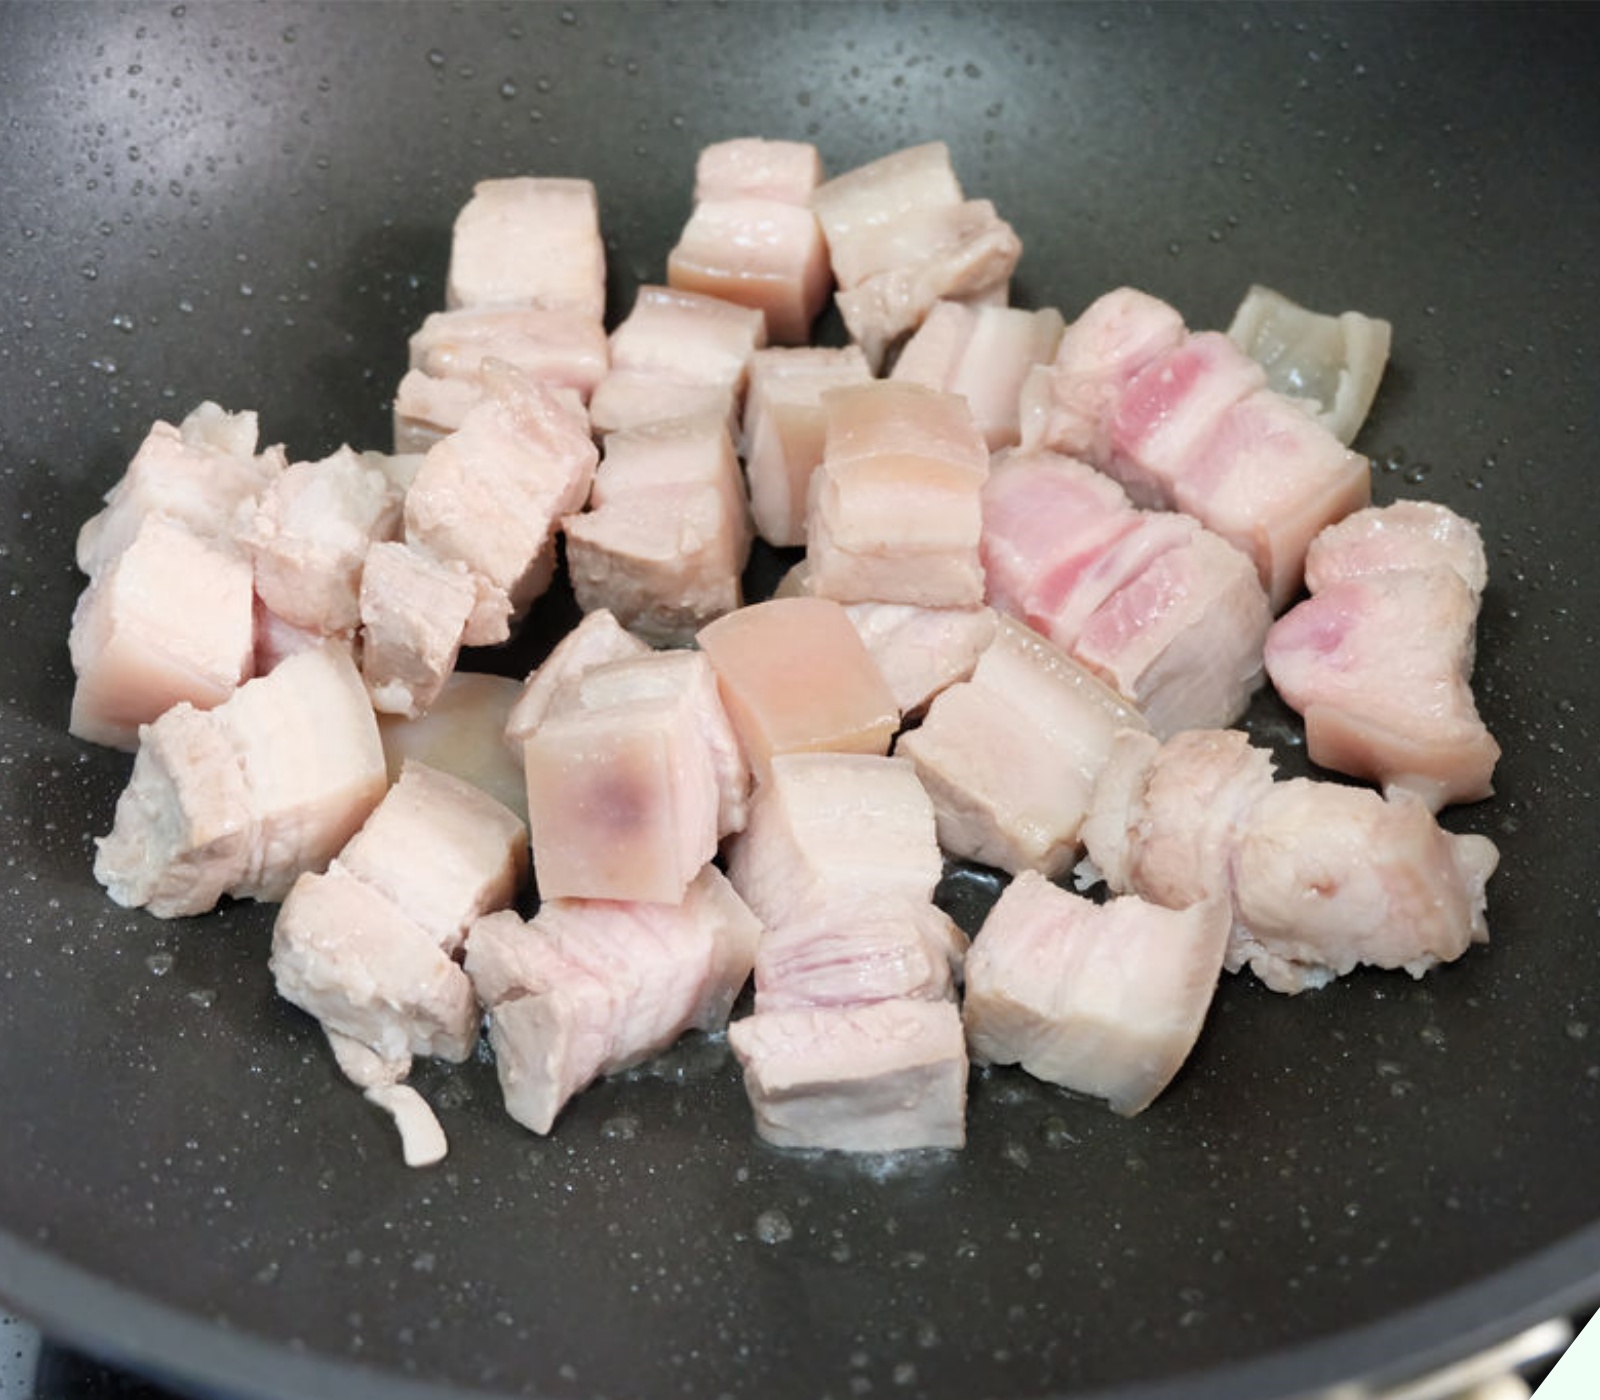 Chần thịt heo nên dùng nước lạnh hay nước nóng? Nhiều người dùng nhầm nước khiến thịt cá “khô như rơm”.